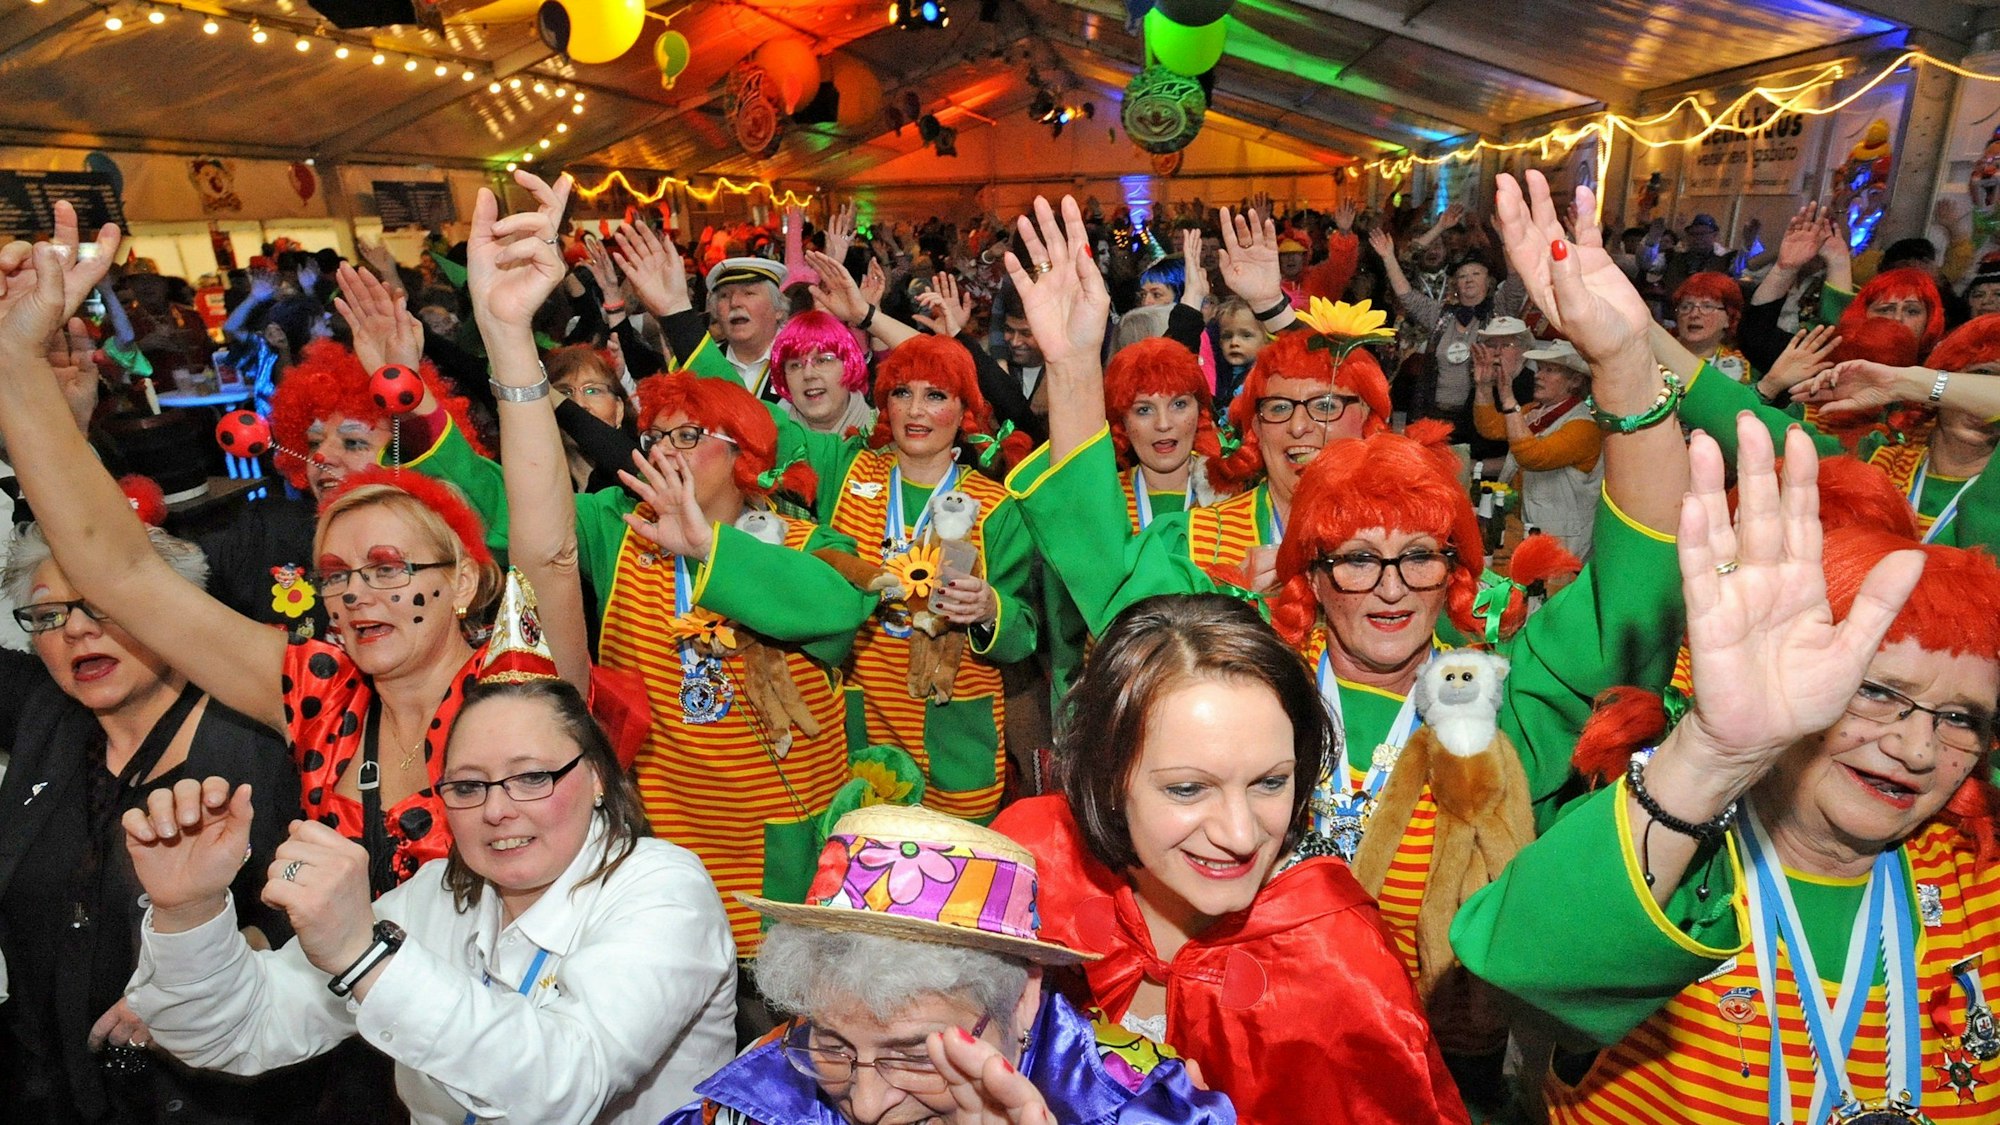 Bunt kostümierte Frauen jubeln bei der Weiberfastnachtsparty im Leichlinger Karnevalszelt.